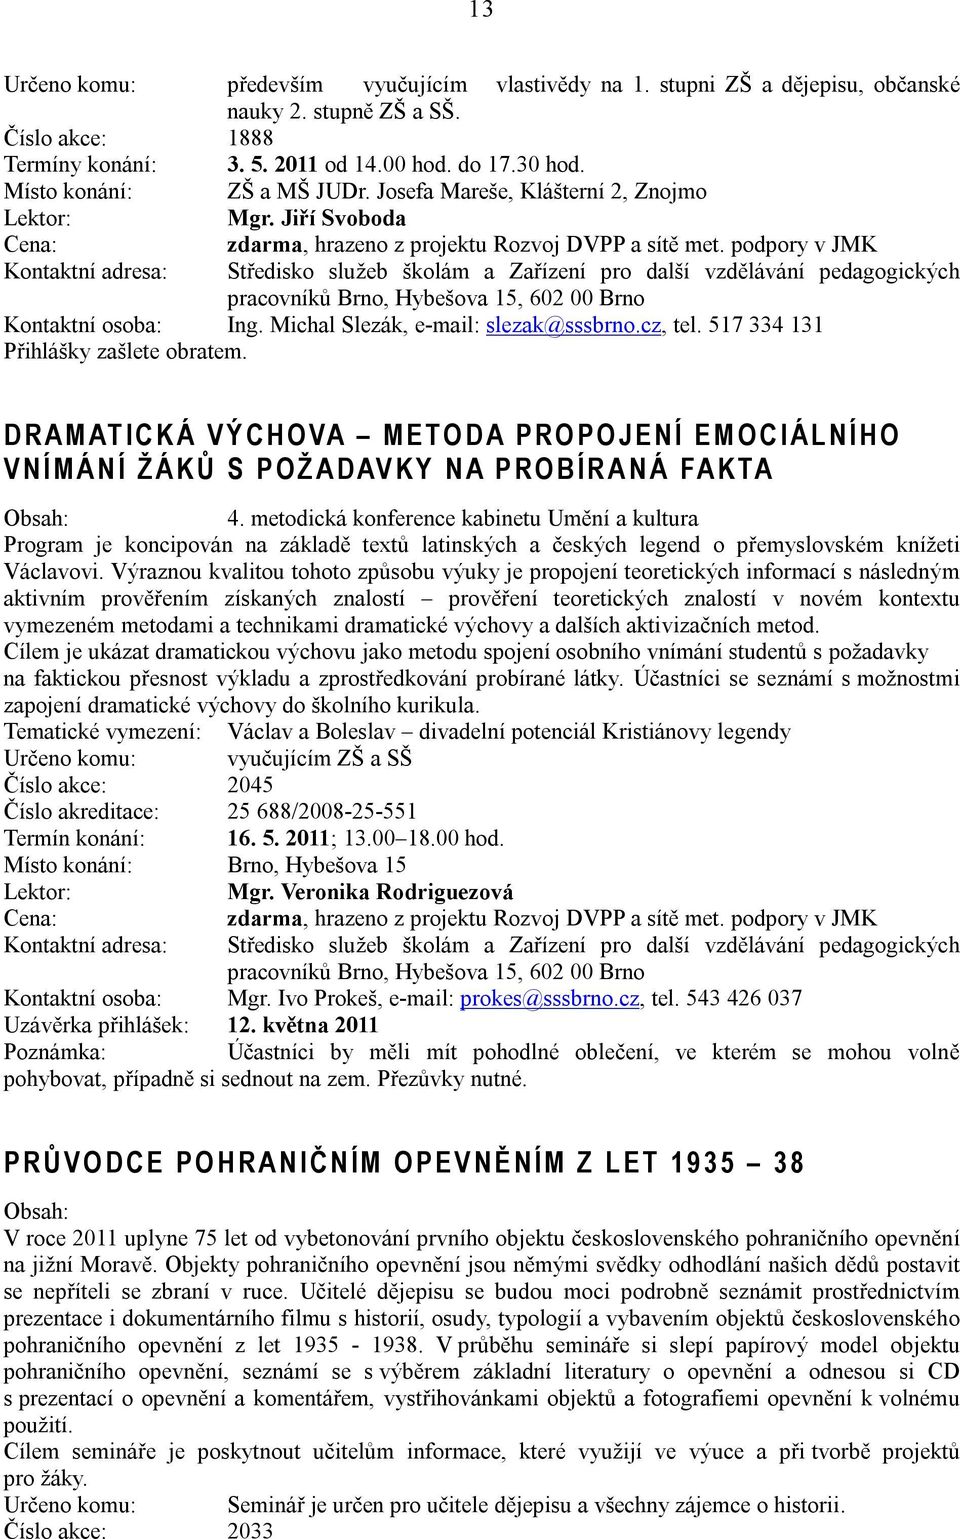 Michal Slezák, e-mail: slezak@sssbrno.cz, tel. 517 334 131 Přihlášky zašlete obratem.